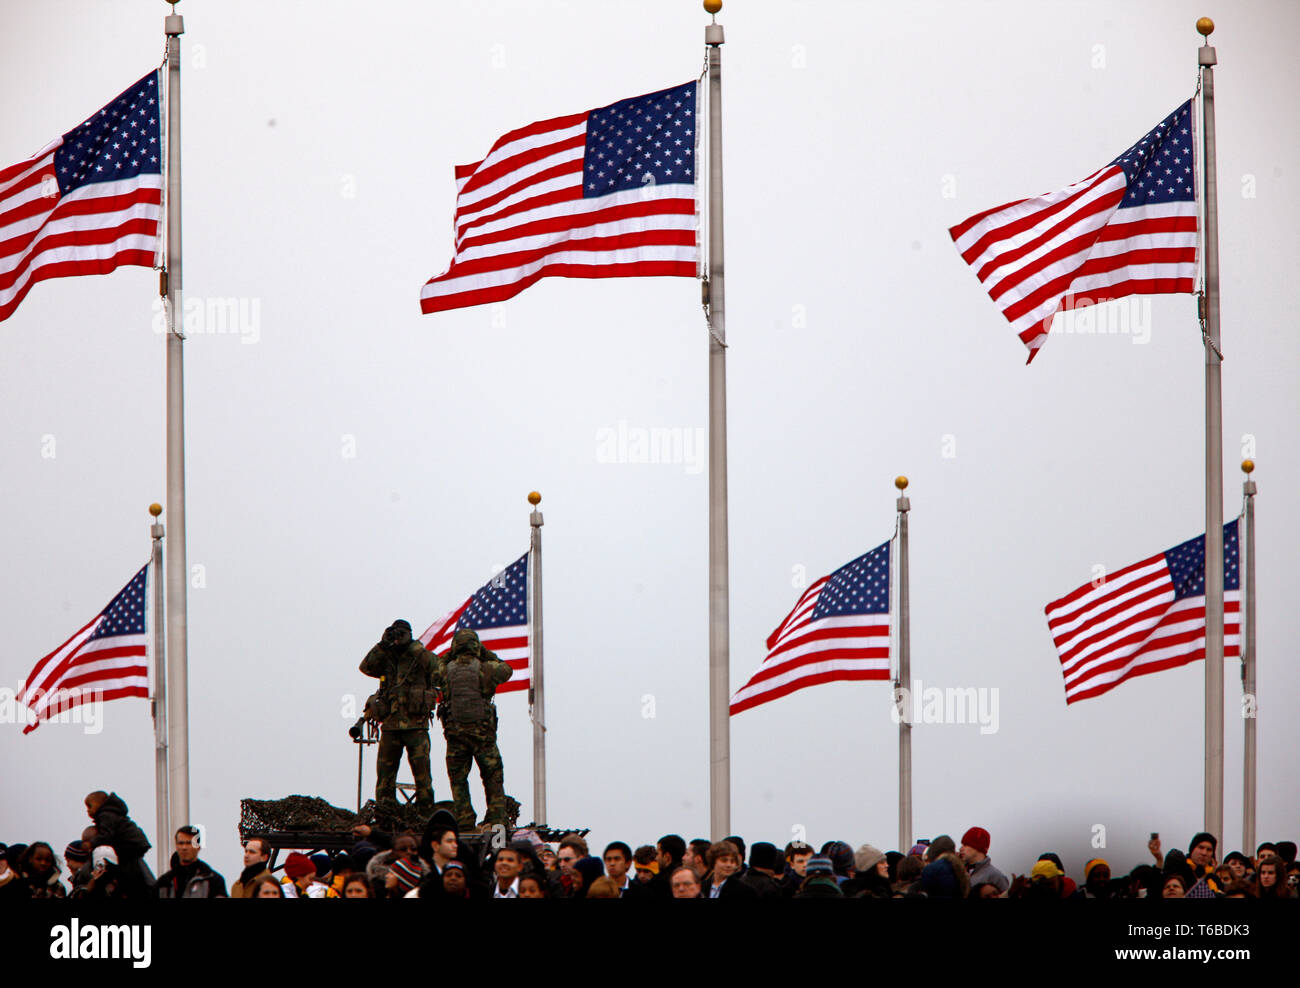 Die Vorbereitungen für die Präsidentschaftswahlen Einweihung. Secret Service Counter Sniper Team überwacht die Menge beobachten das kostenlose Konzert im Lincoln Memorial. Stockfoto